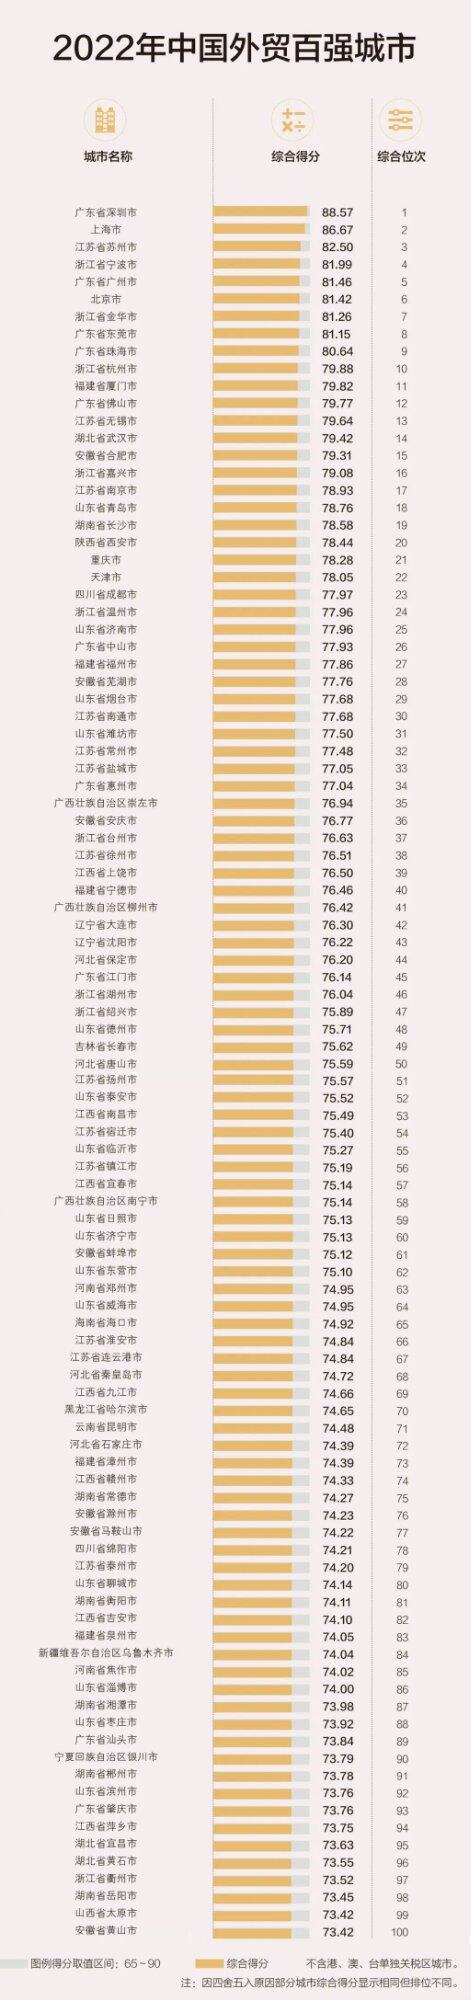 虽然惠州GDP全省第五，但从综合实力来看，排名第七才是名符其实的。